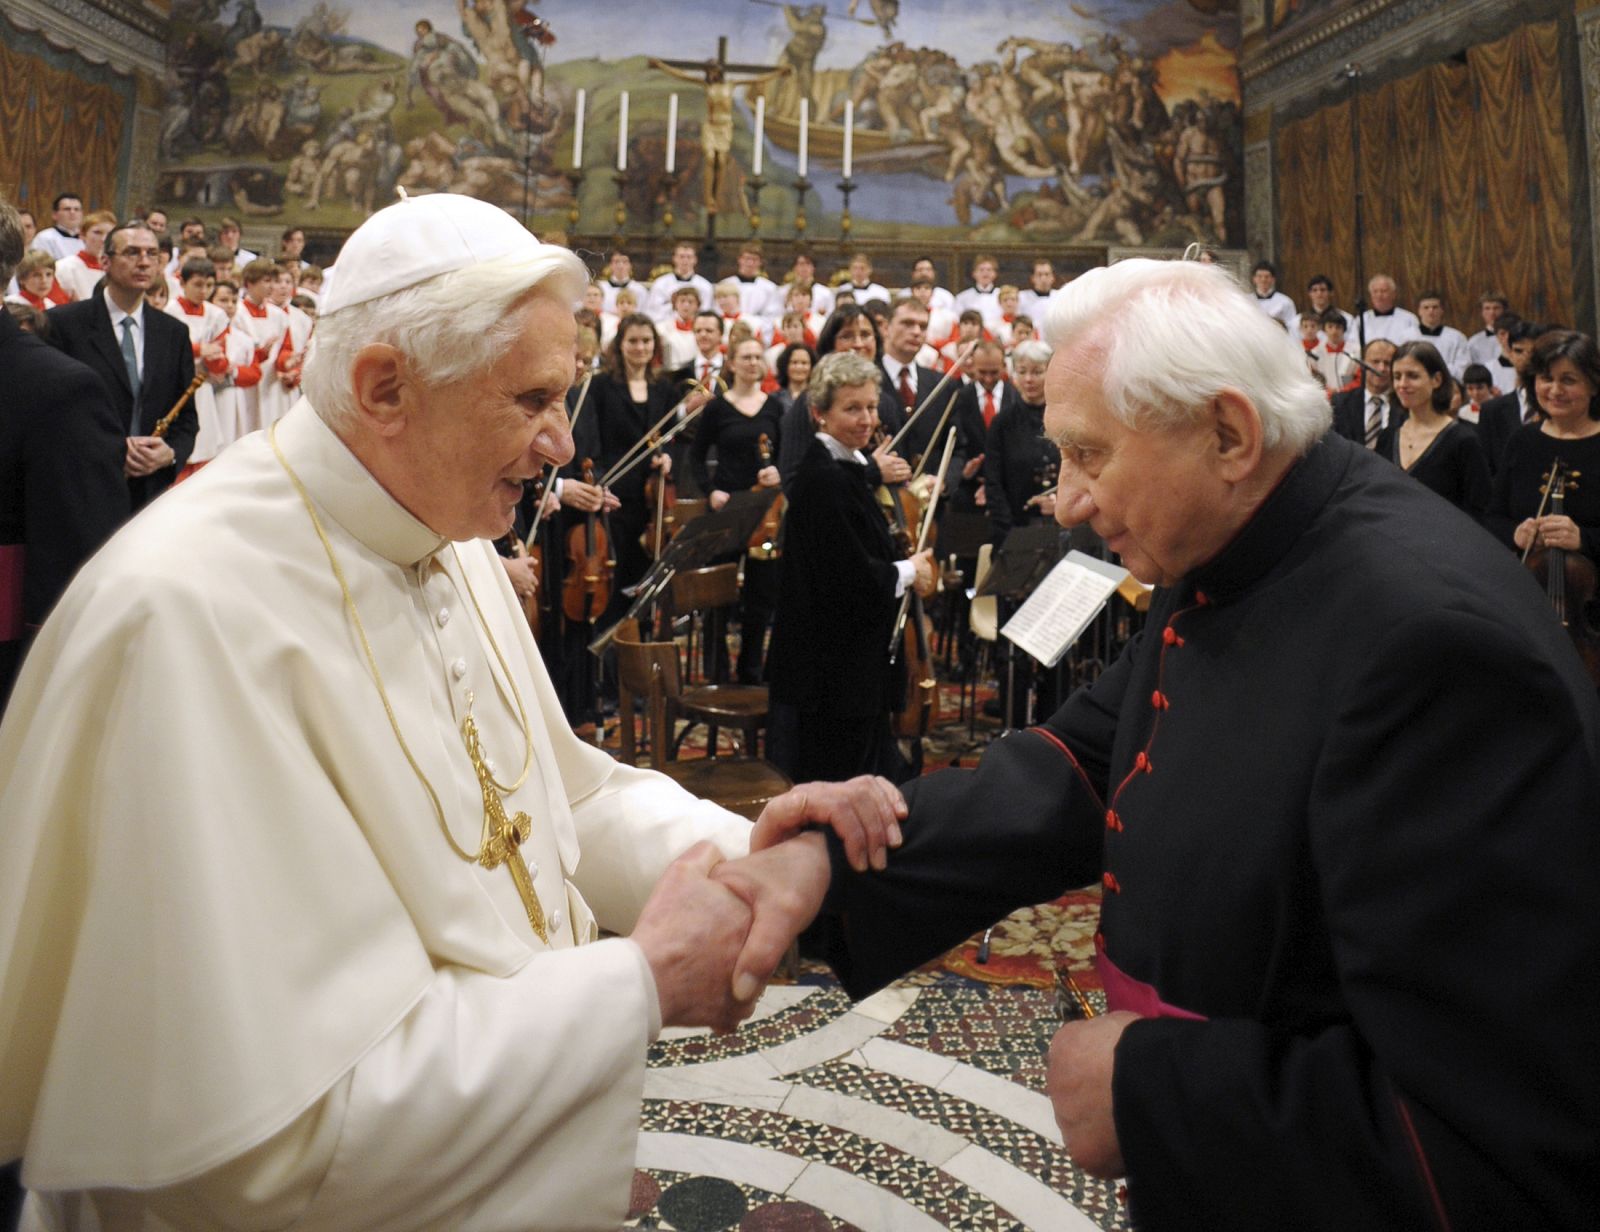 El Papa Benedicto XVI celebra el 85º cumpleaños de su hermano, Monseñor Georg Ratzinger, en la Capilla Sixtina en el Vaticano.